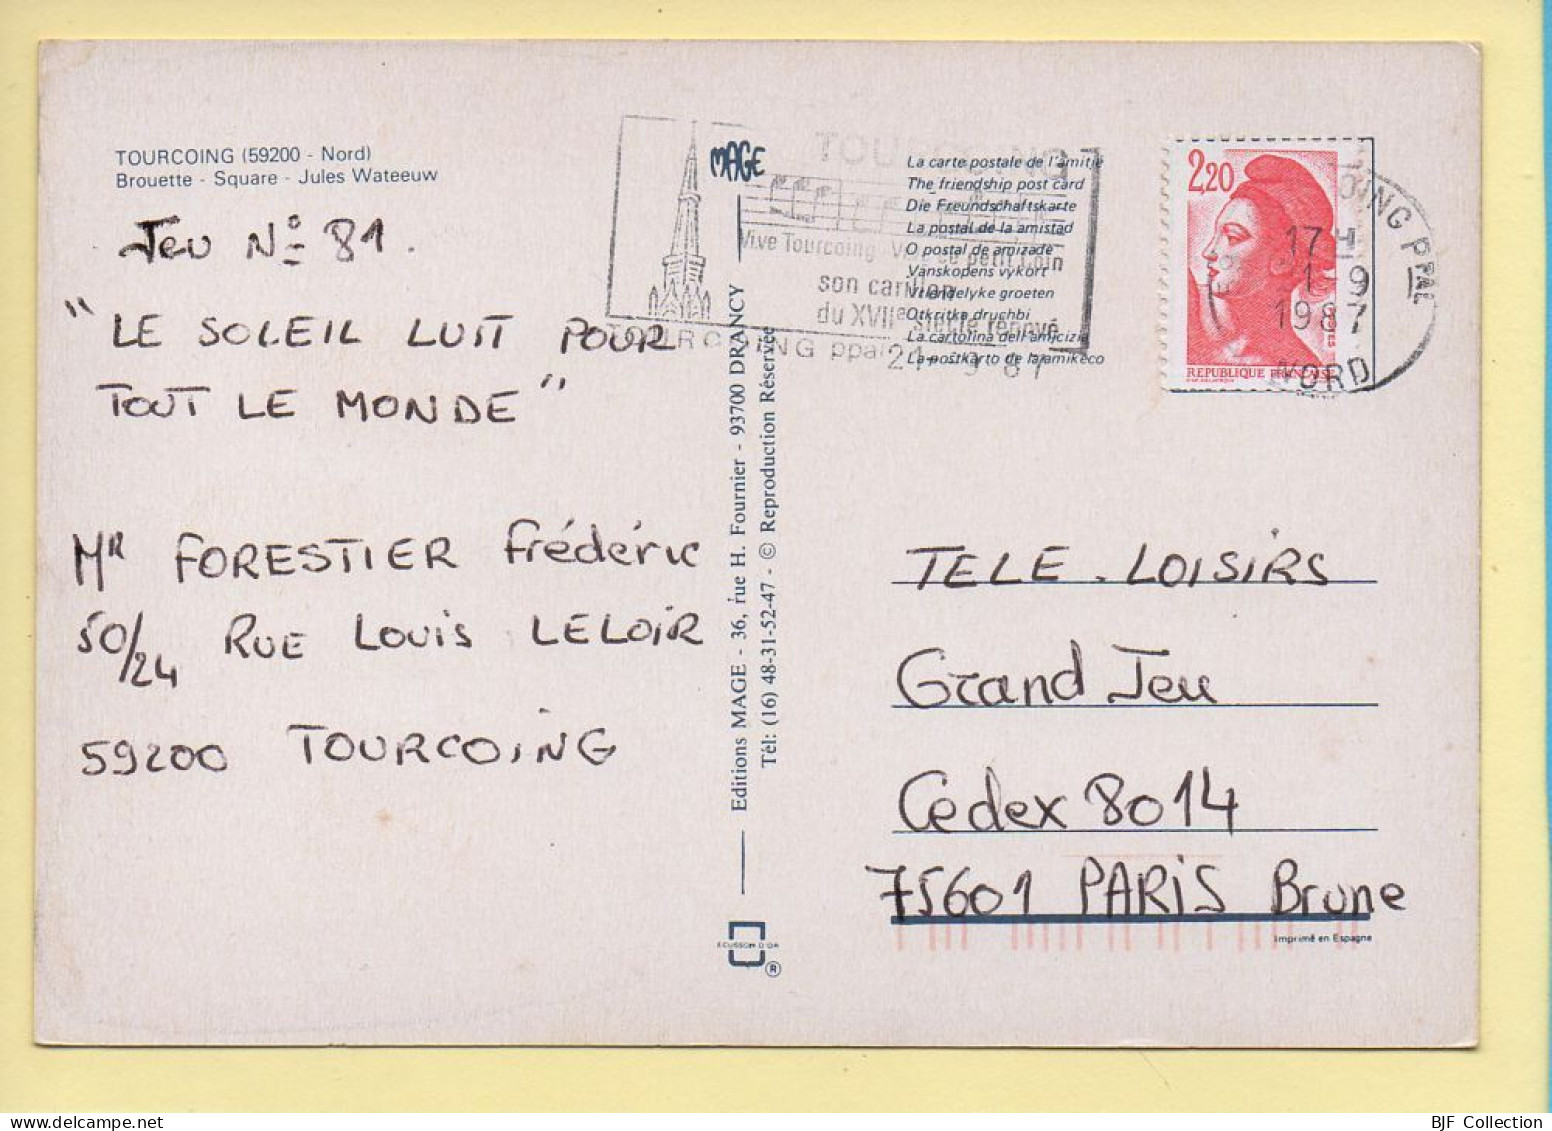 59. TOURCOING – Ville Du Broutteux / 2 Vues / Parchemin / Carte Toilée (voir Scan Recto/verso) - Tourcoing